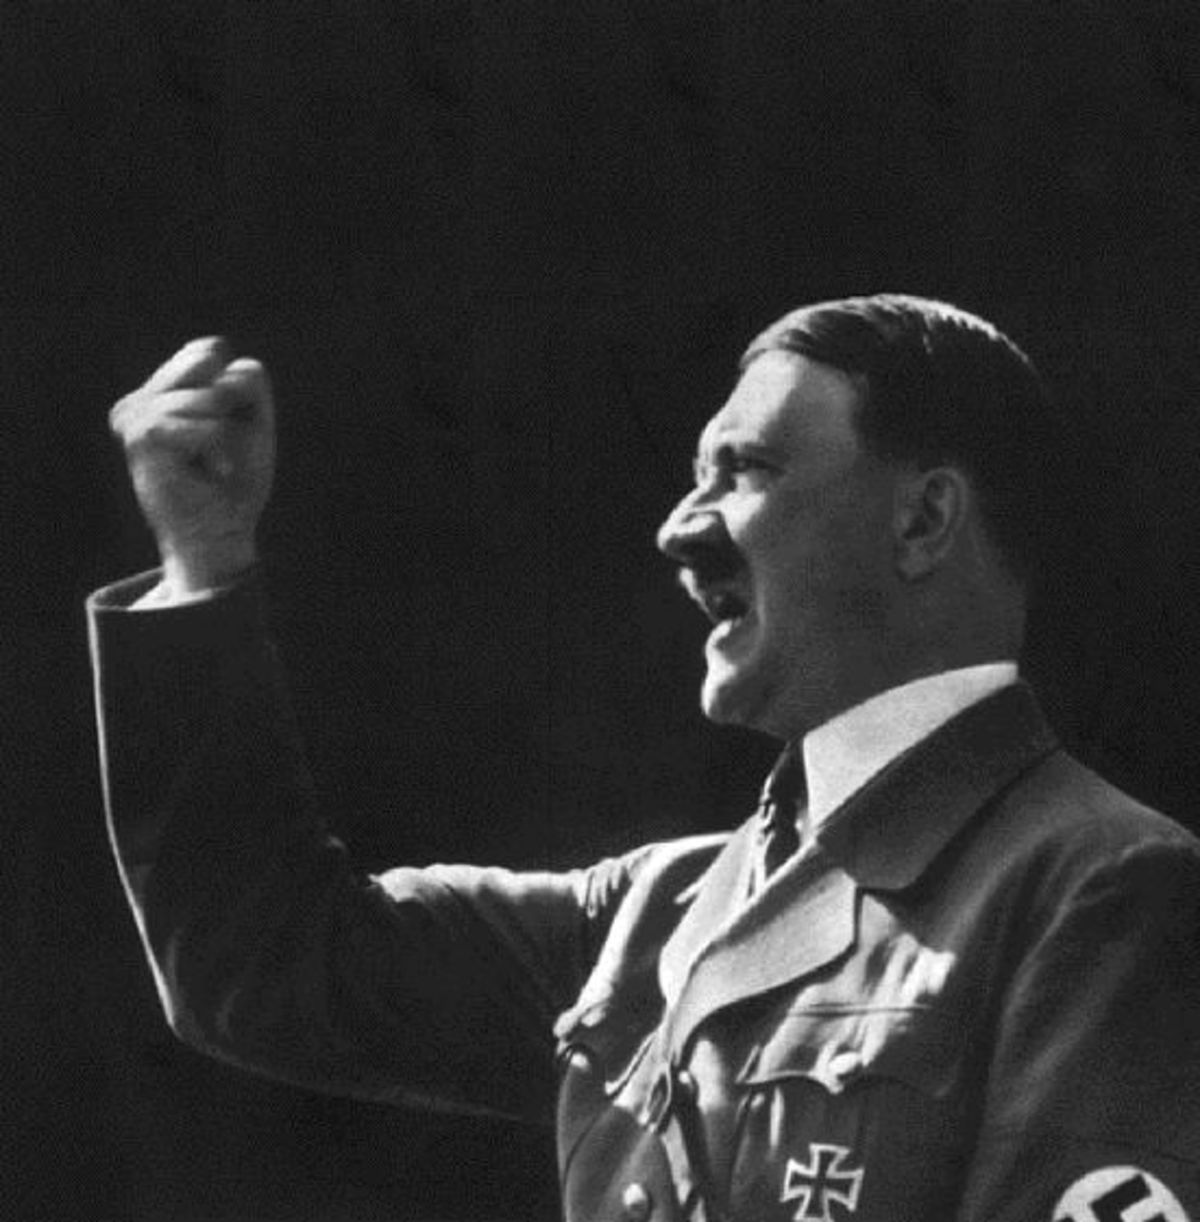 Καταγγελία-σοκ! Αξιωματικός επικαλέστηκε τον Χίτλερ ως …”μεγάλο άνδρα” σε ομιλία προς νεοσύλλεκτους